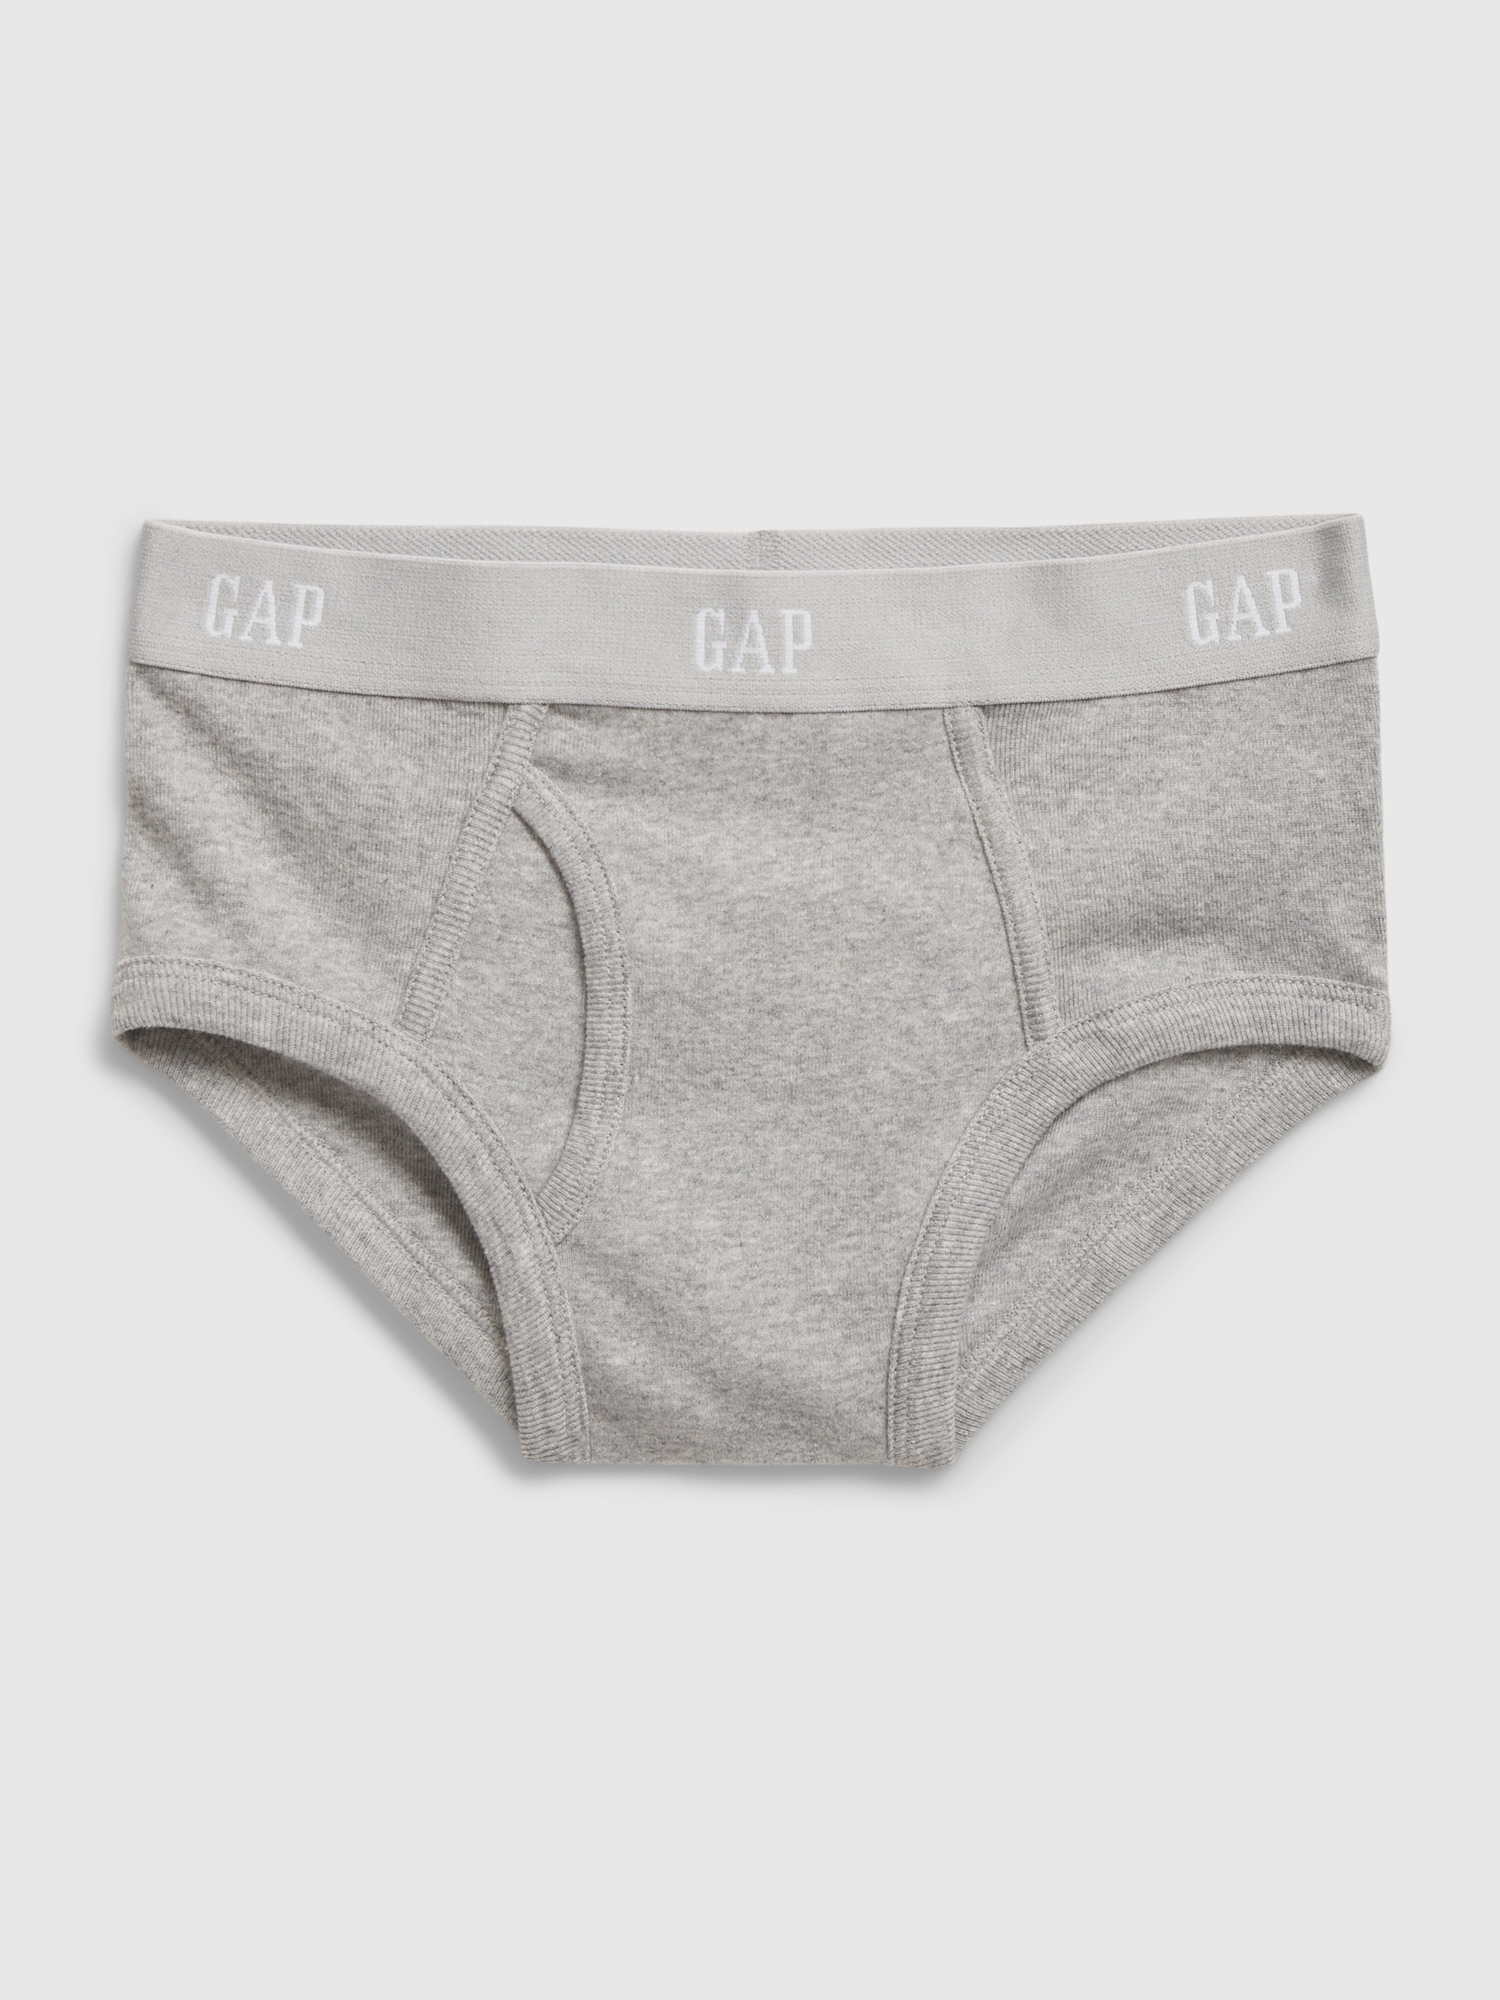 Best Deals for Kids Gap Underwear